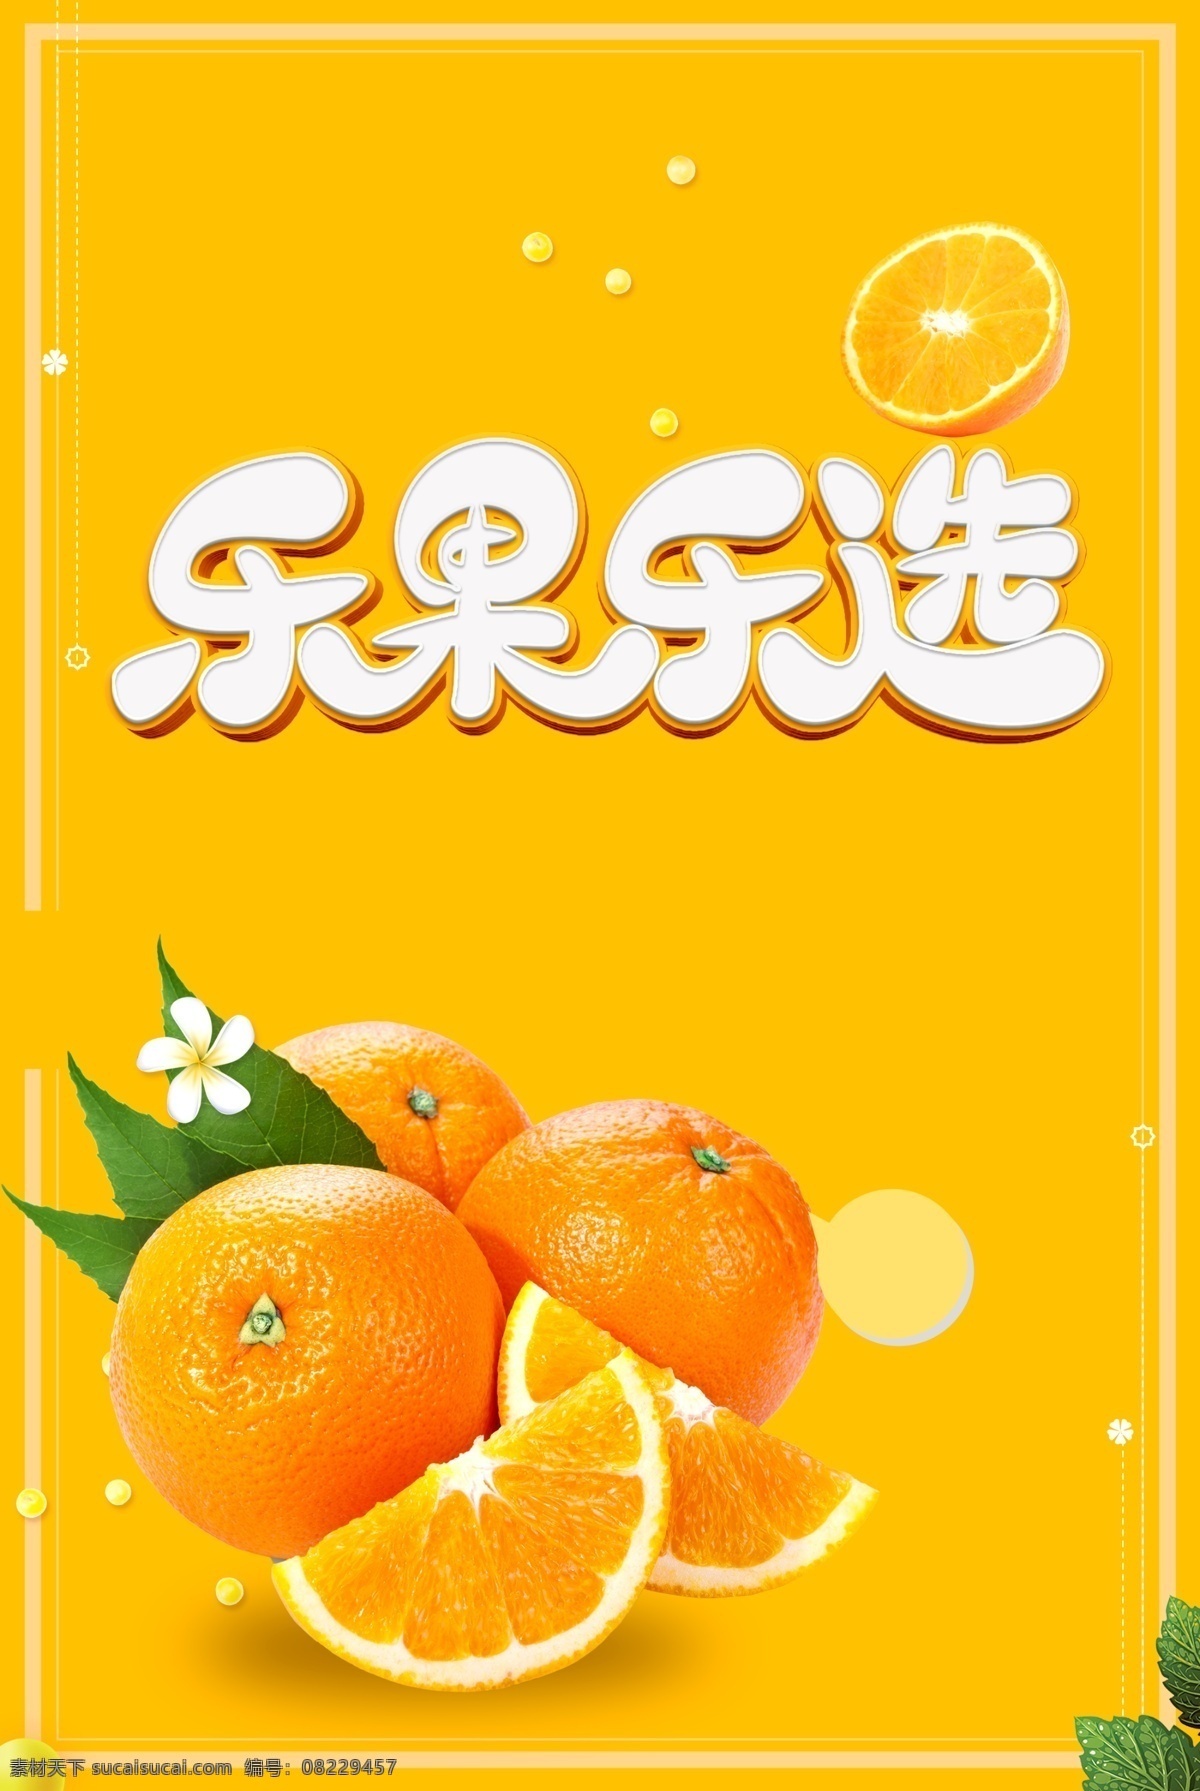 水果店海报 水果 水果店 橙子 水果店单页 水果店宣传单